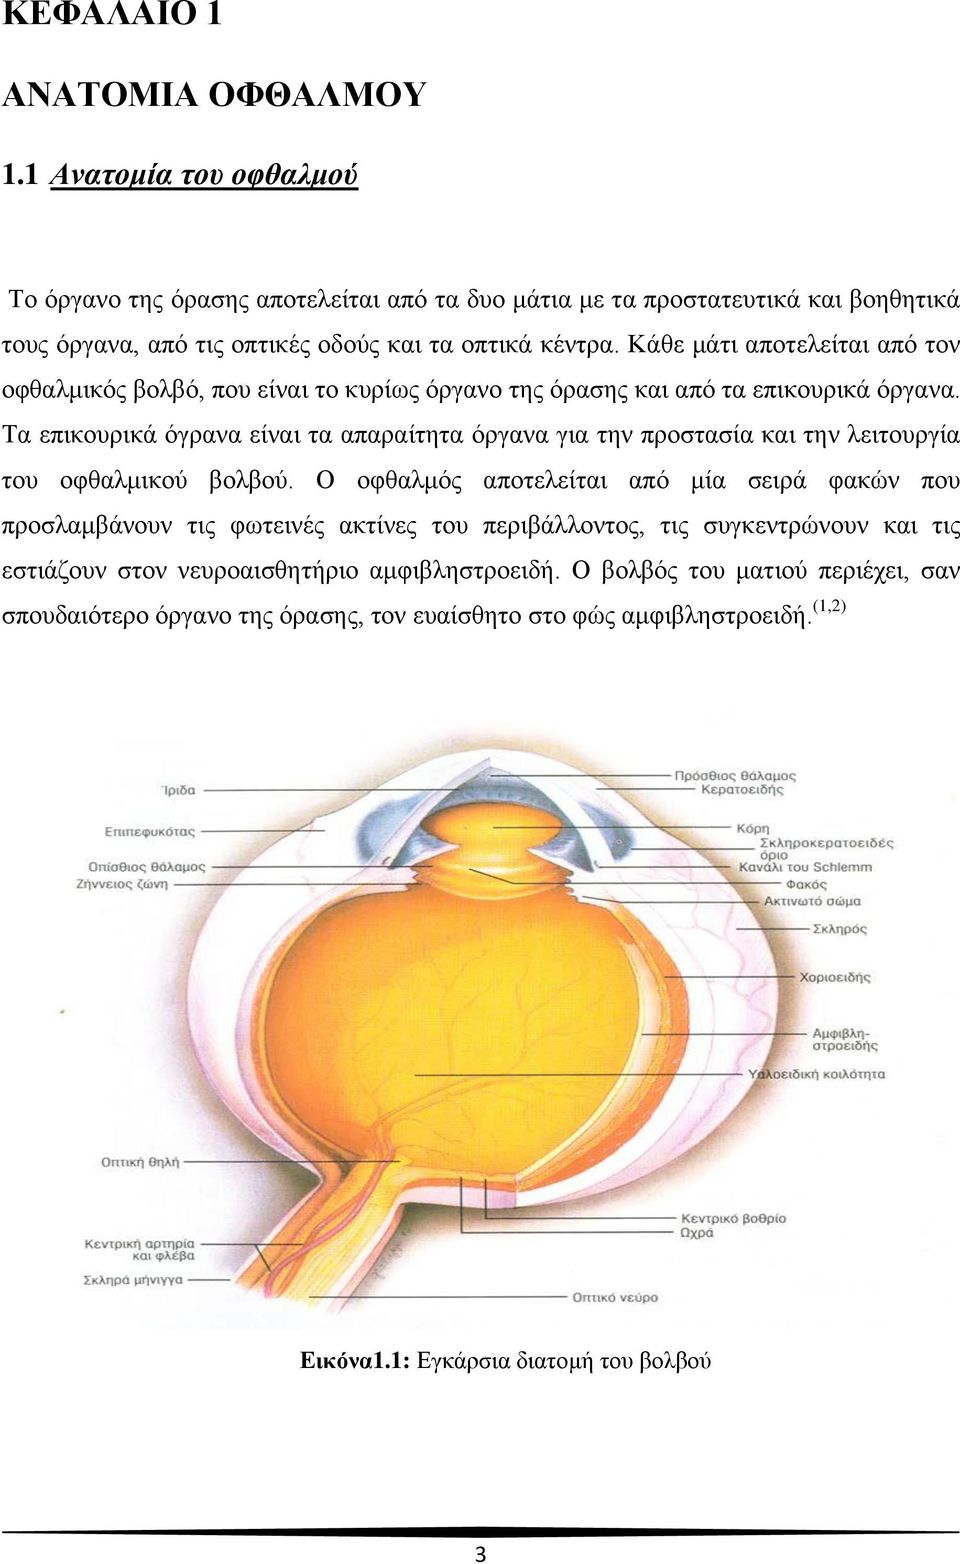 Κάθε μάτι αποτελείται από τον οφθαλμικός βολβό, που είναι το κυρίως όργανο της όρασης και από τα επικουρικά όργανα.